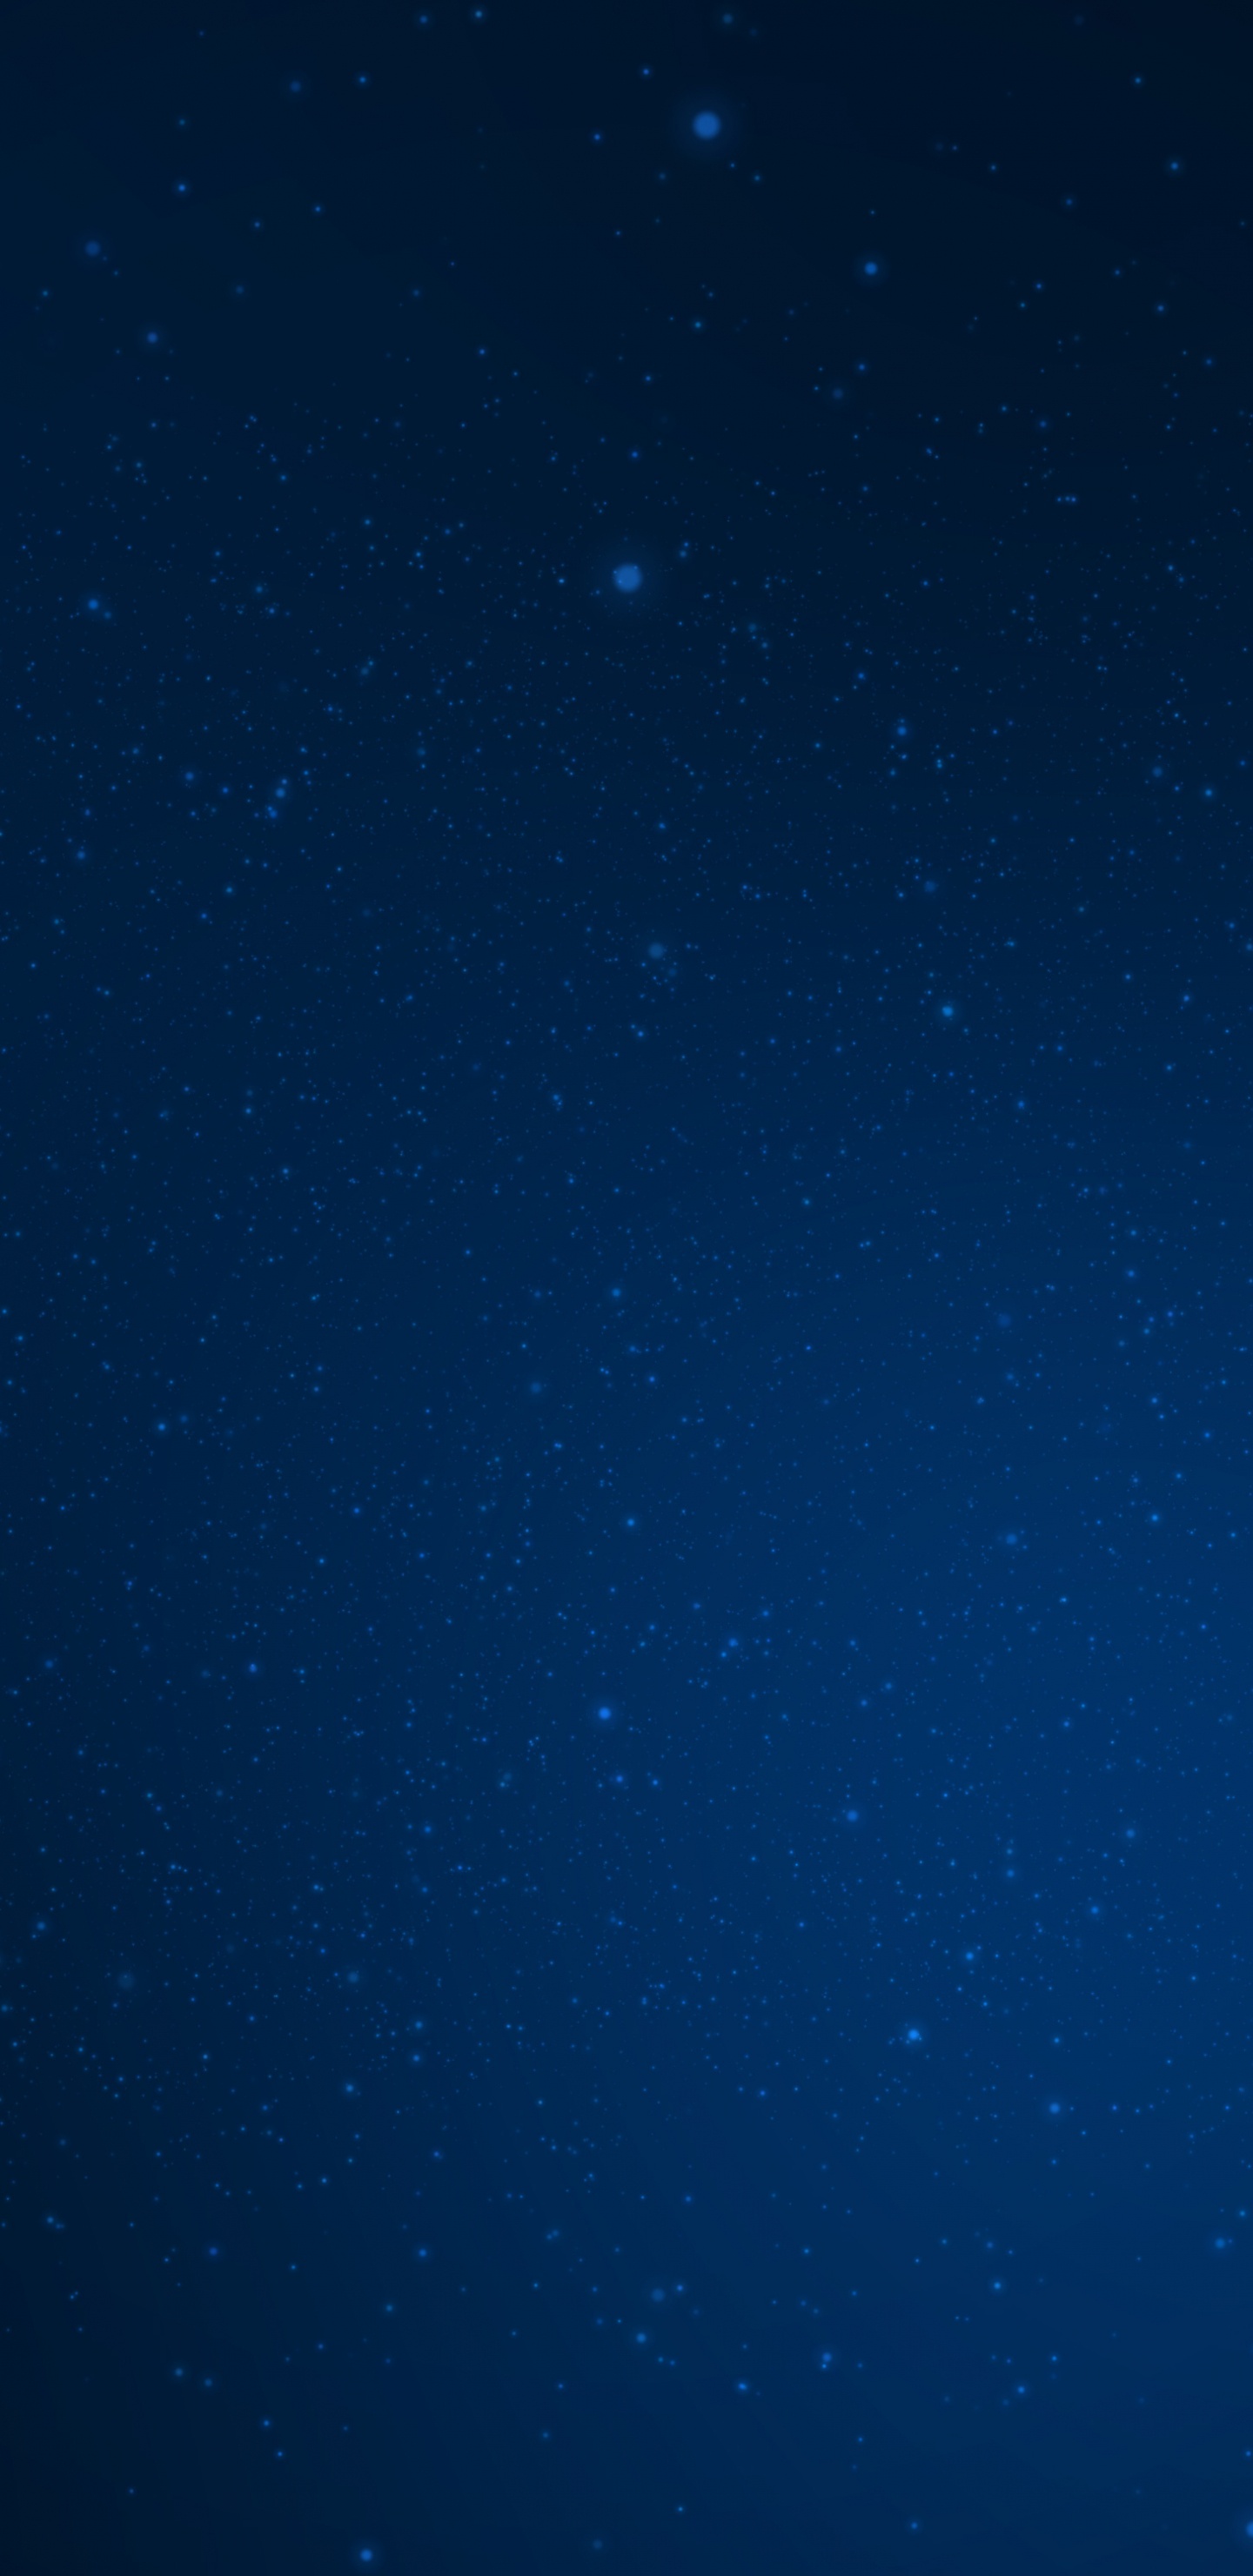 Ciel Bleu Avec Des Étoiles Pendant la Nuit. Wallpaper in 1440x2960 Resolution